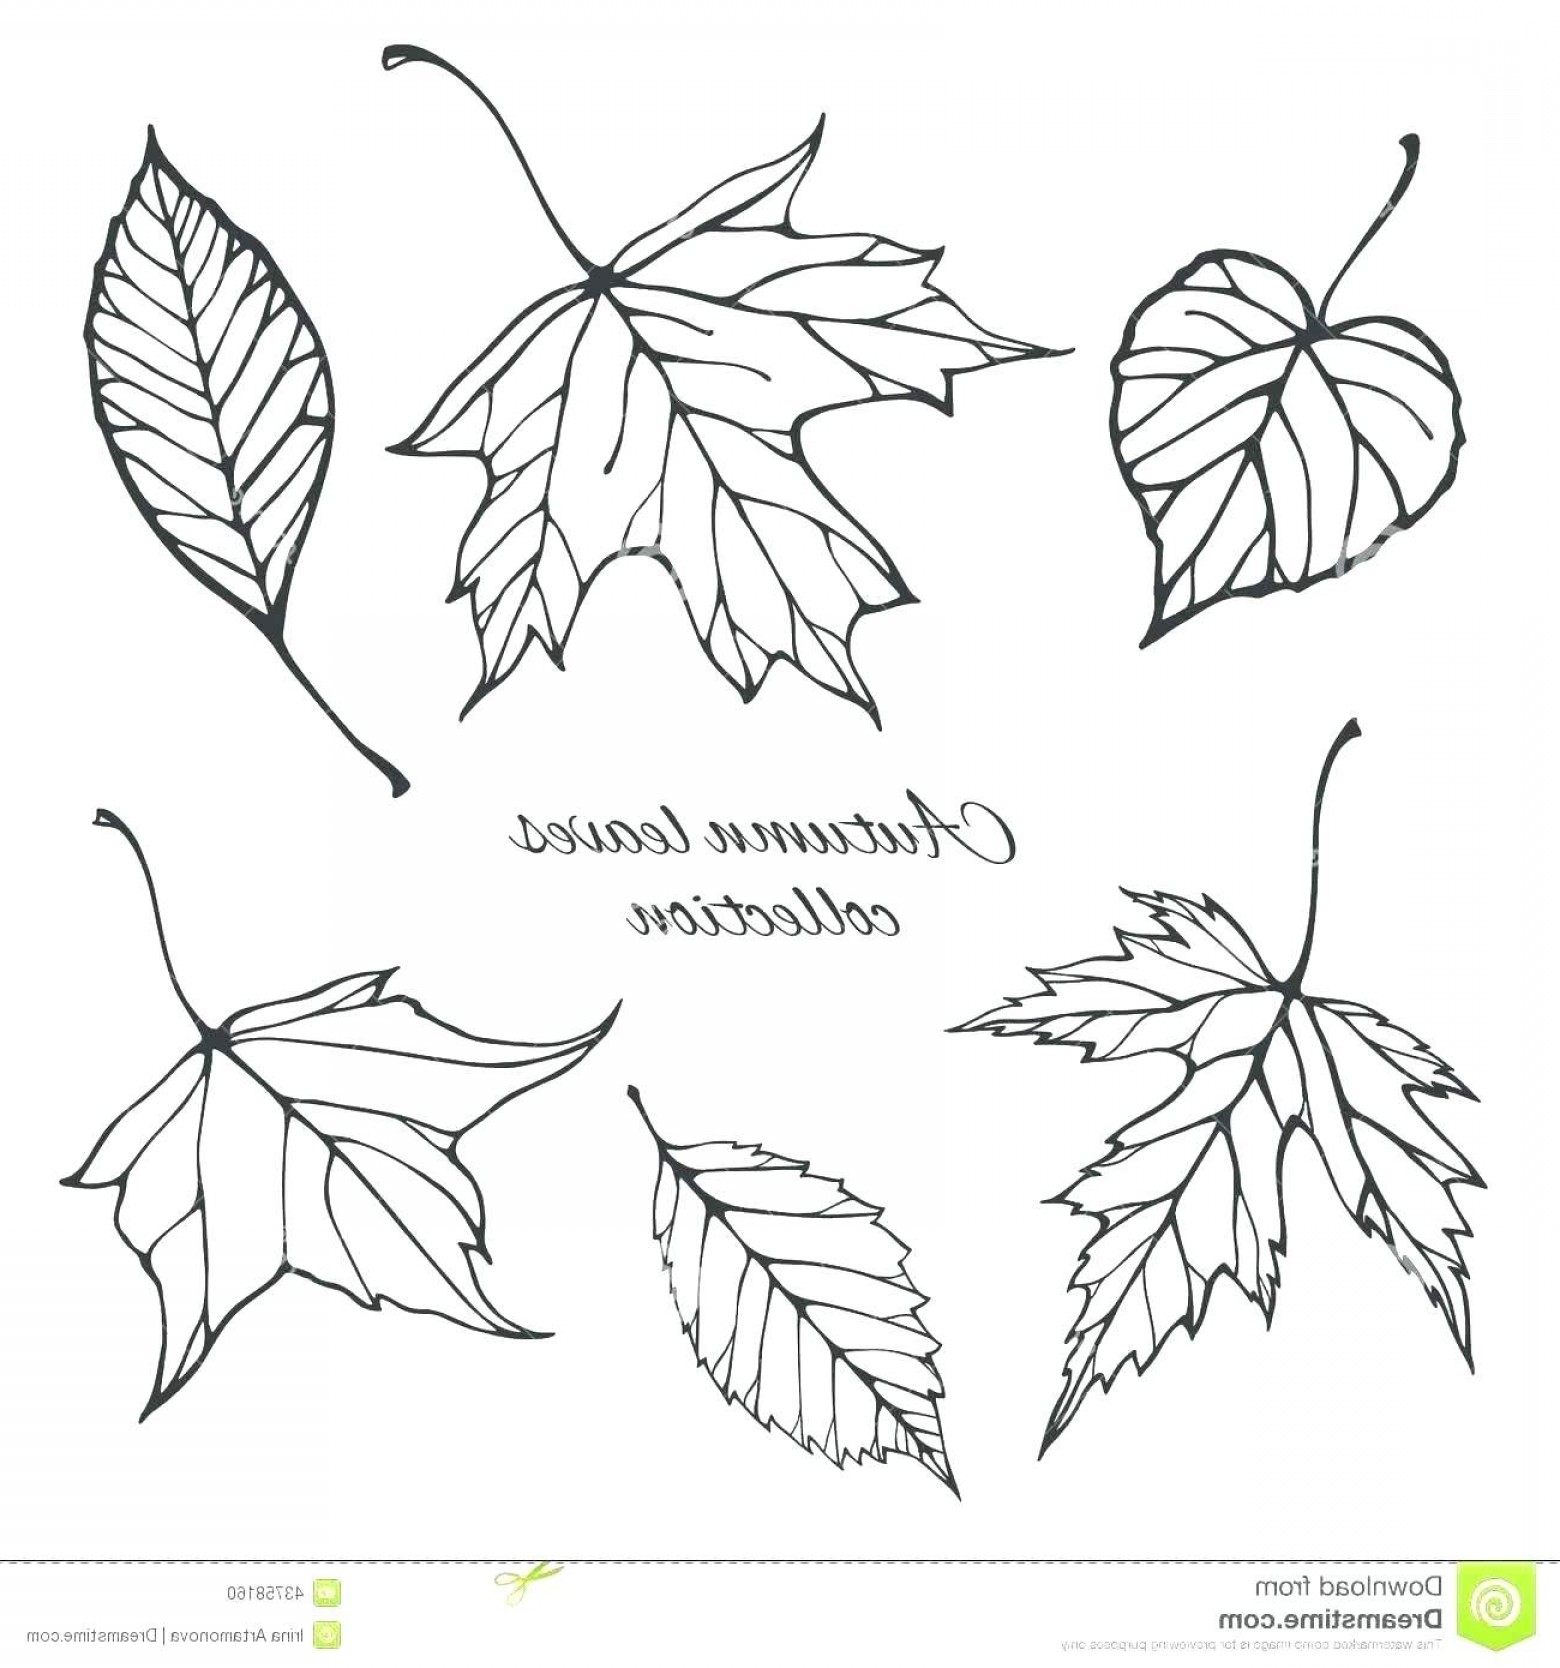 Нарисовать листья разных деревьев